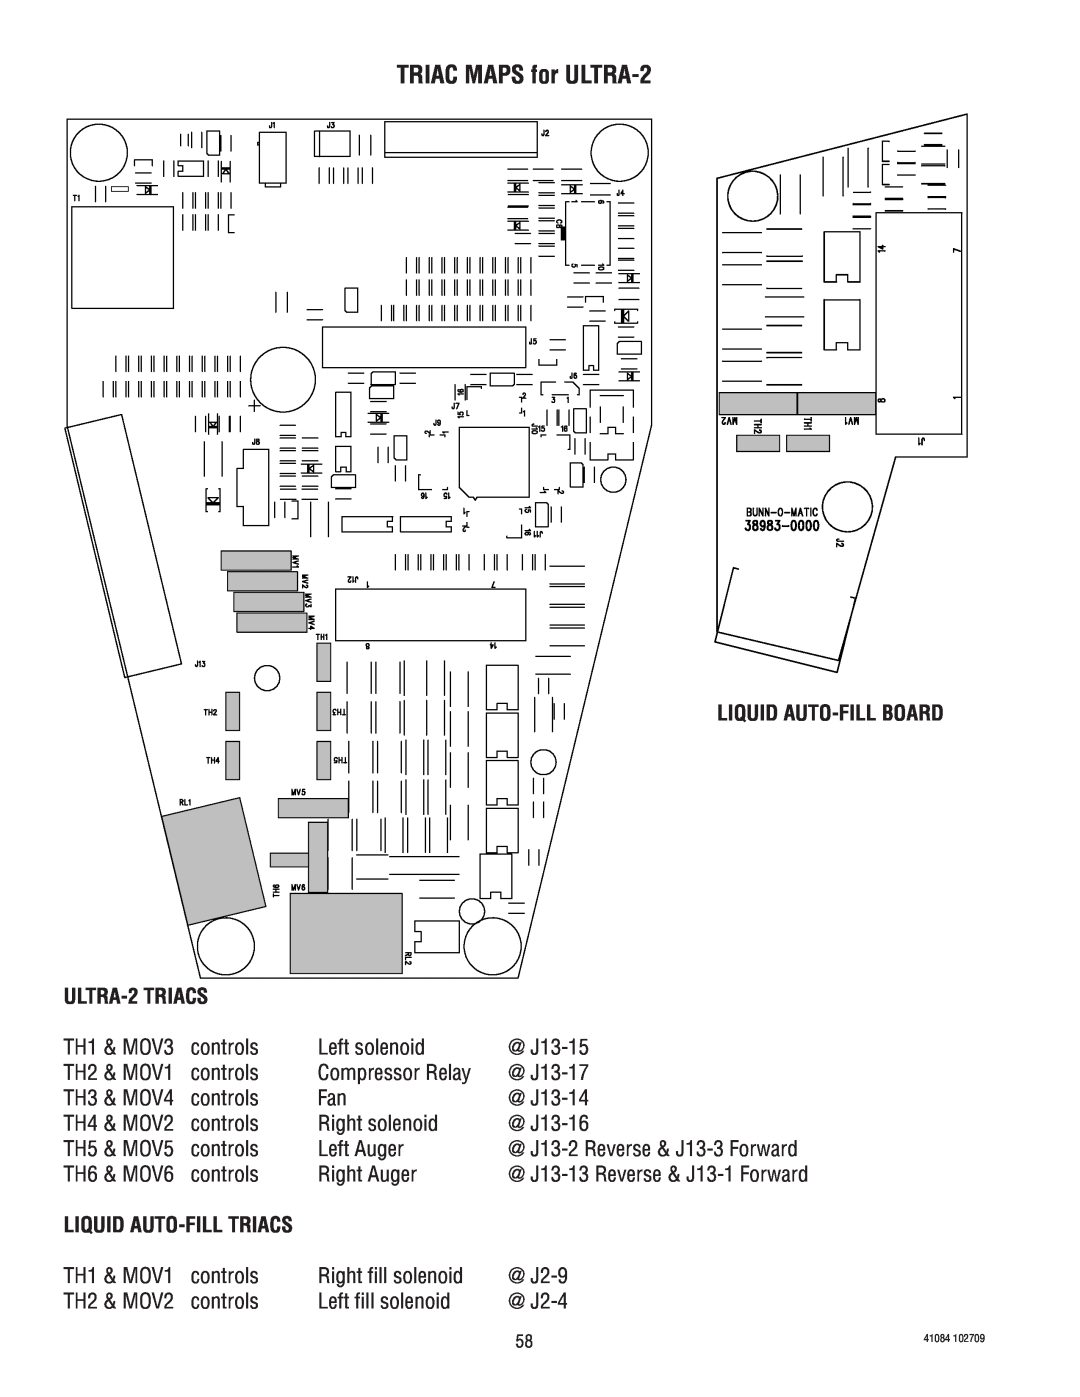 Bunn ULTRA-1 manual TRIAC MAPS for ULTRA-2, Liquid Auto-Fillboard, ULTRA-2TRIACS 